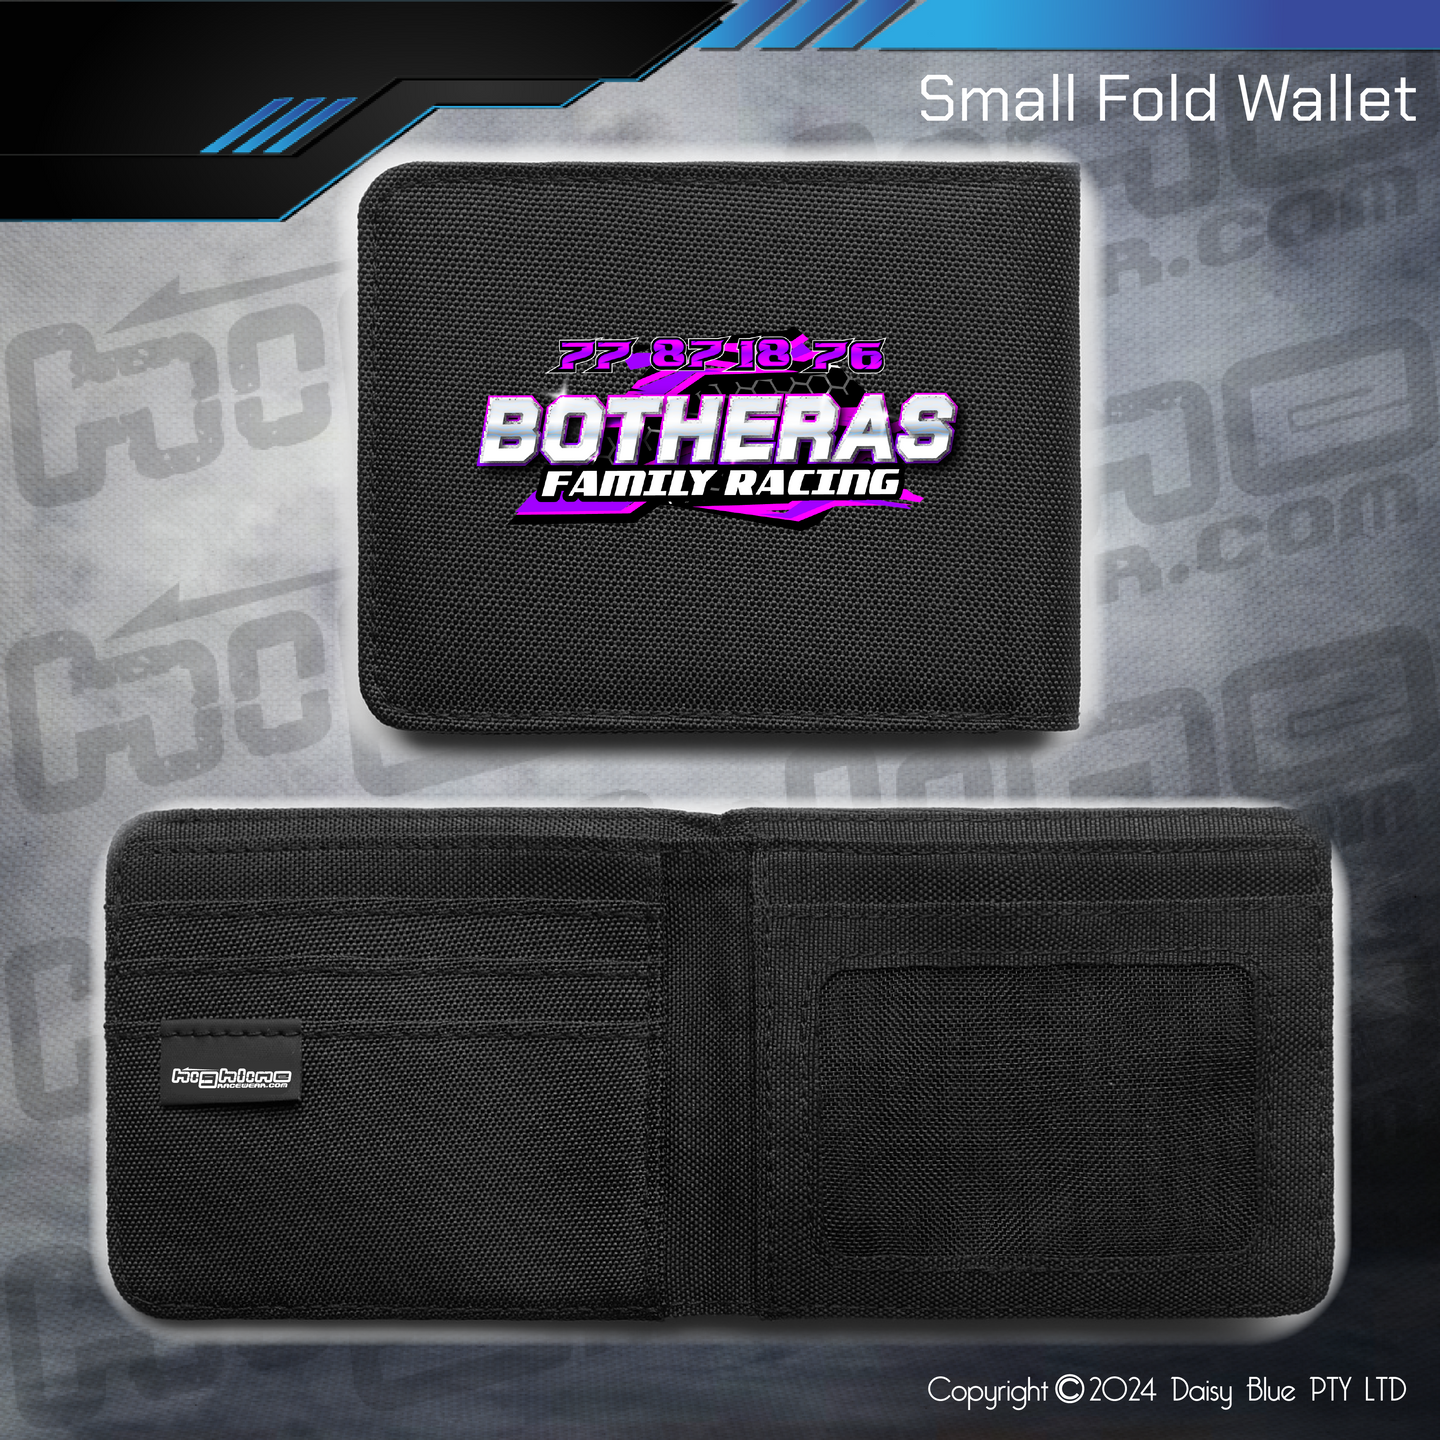 Compact Wallet - Botheras Faamily Racing